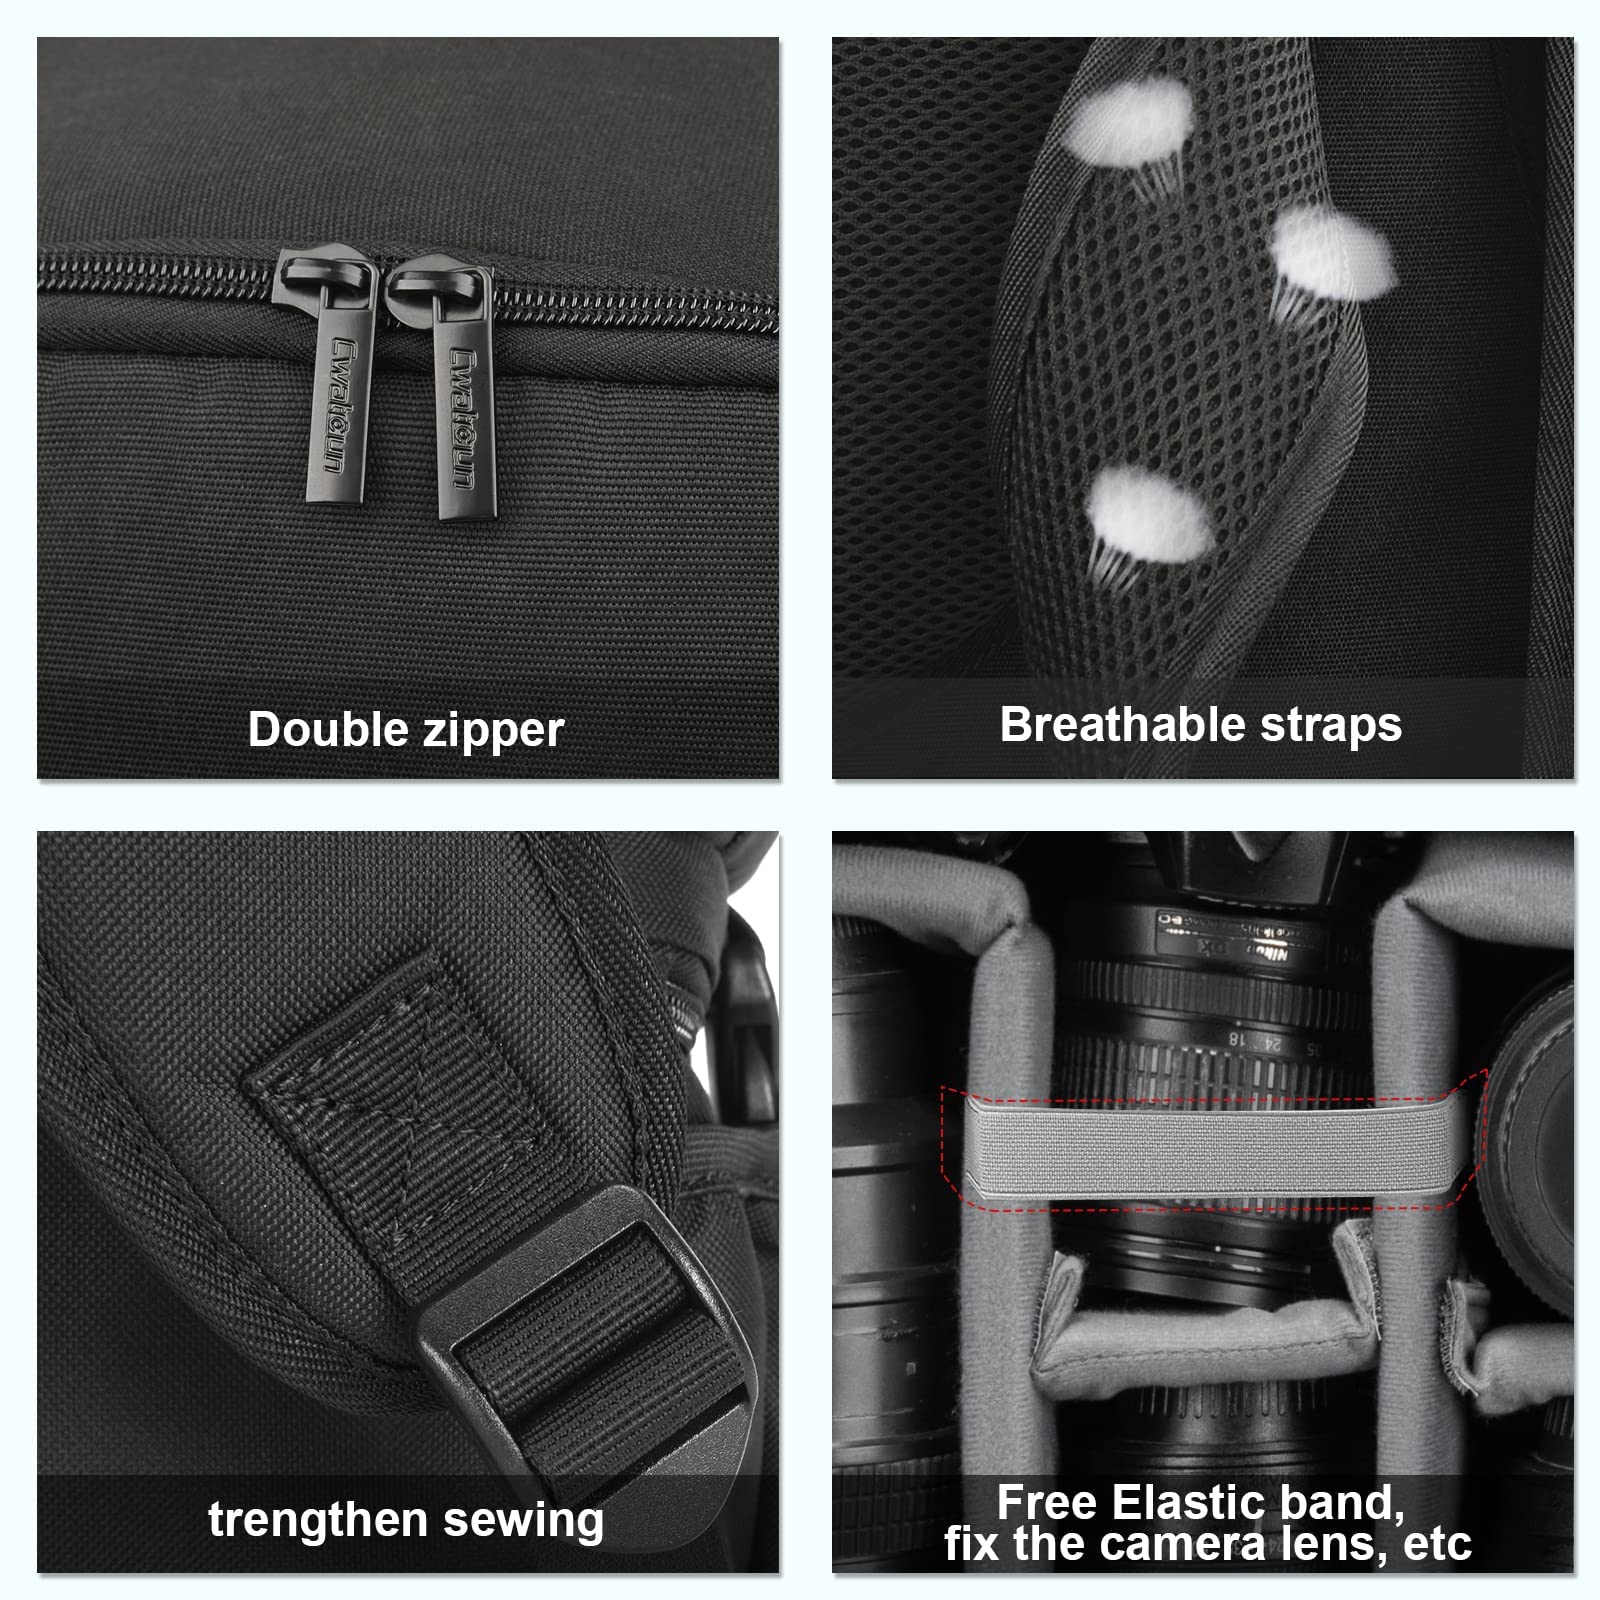 Nikon D3300 review | Cameralabs